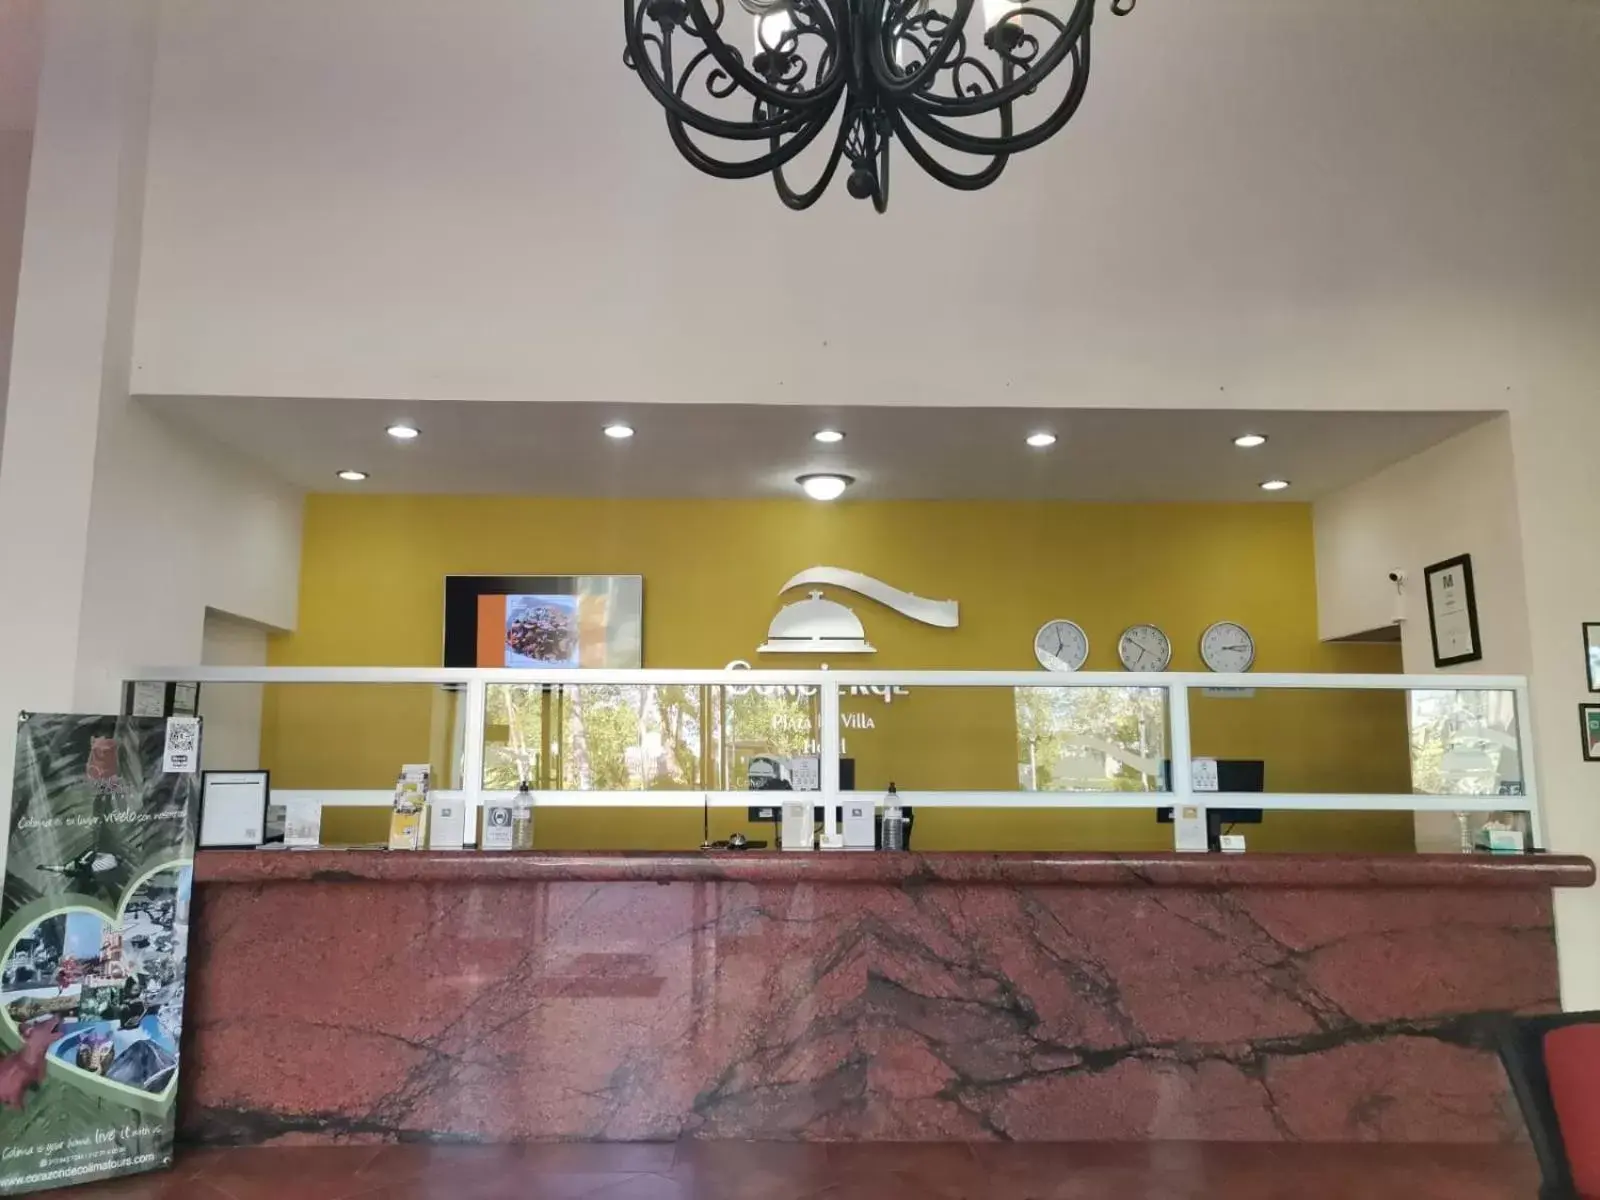 Lobby or reception, Lobby/Reception in Concierge Plaza La Villa